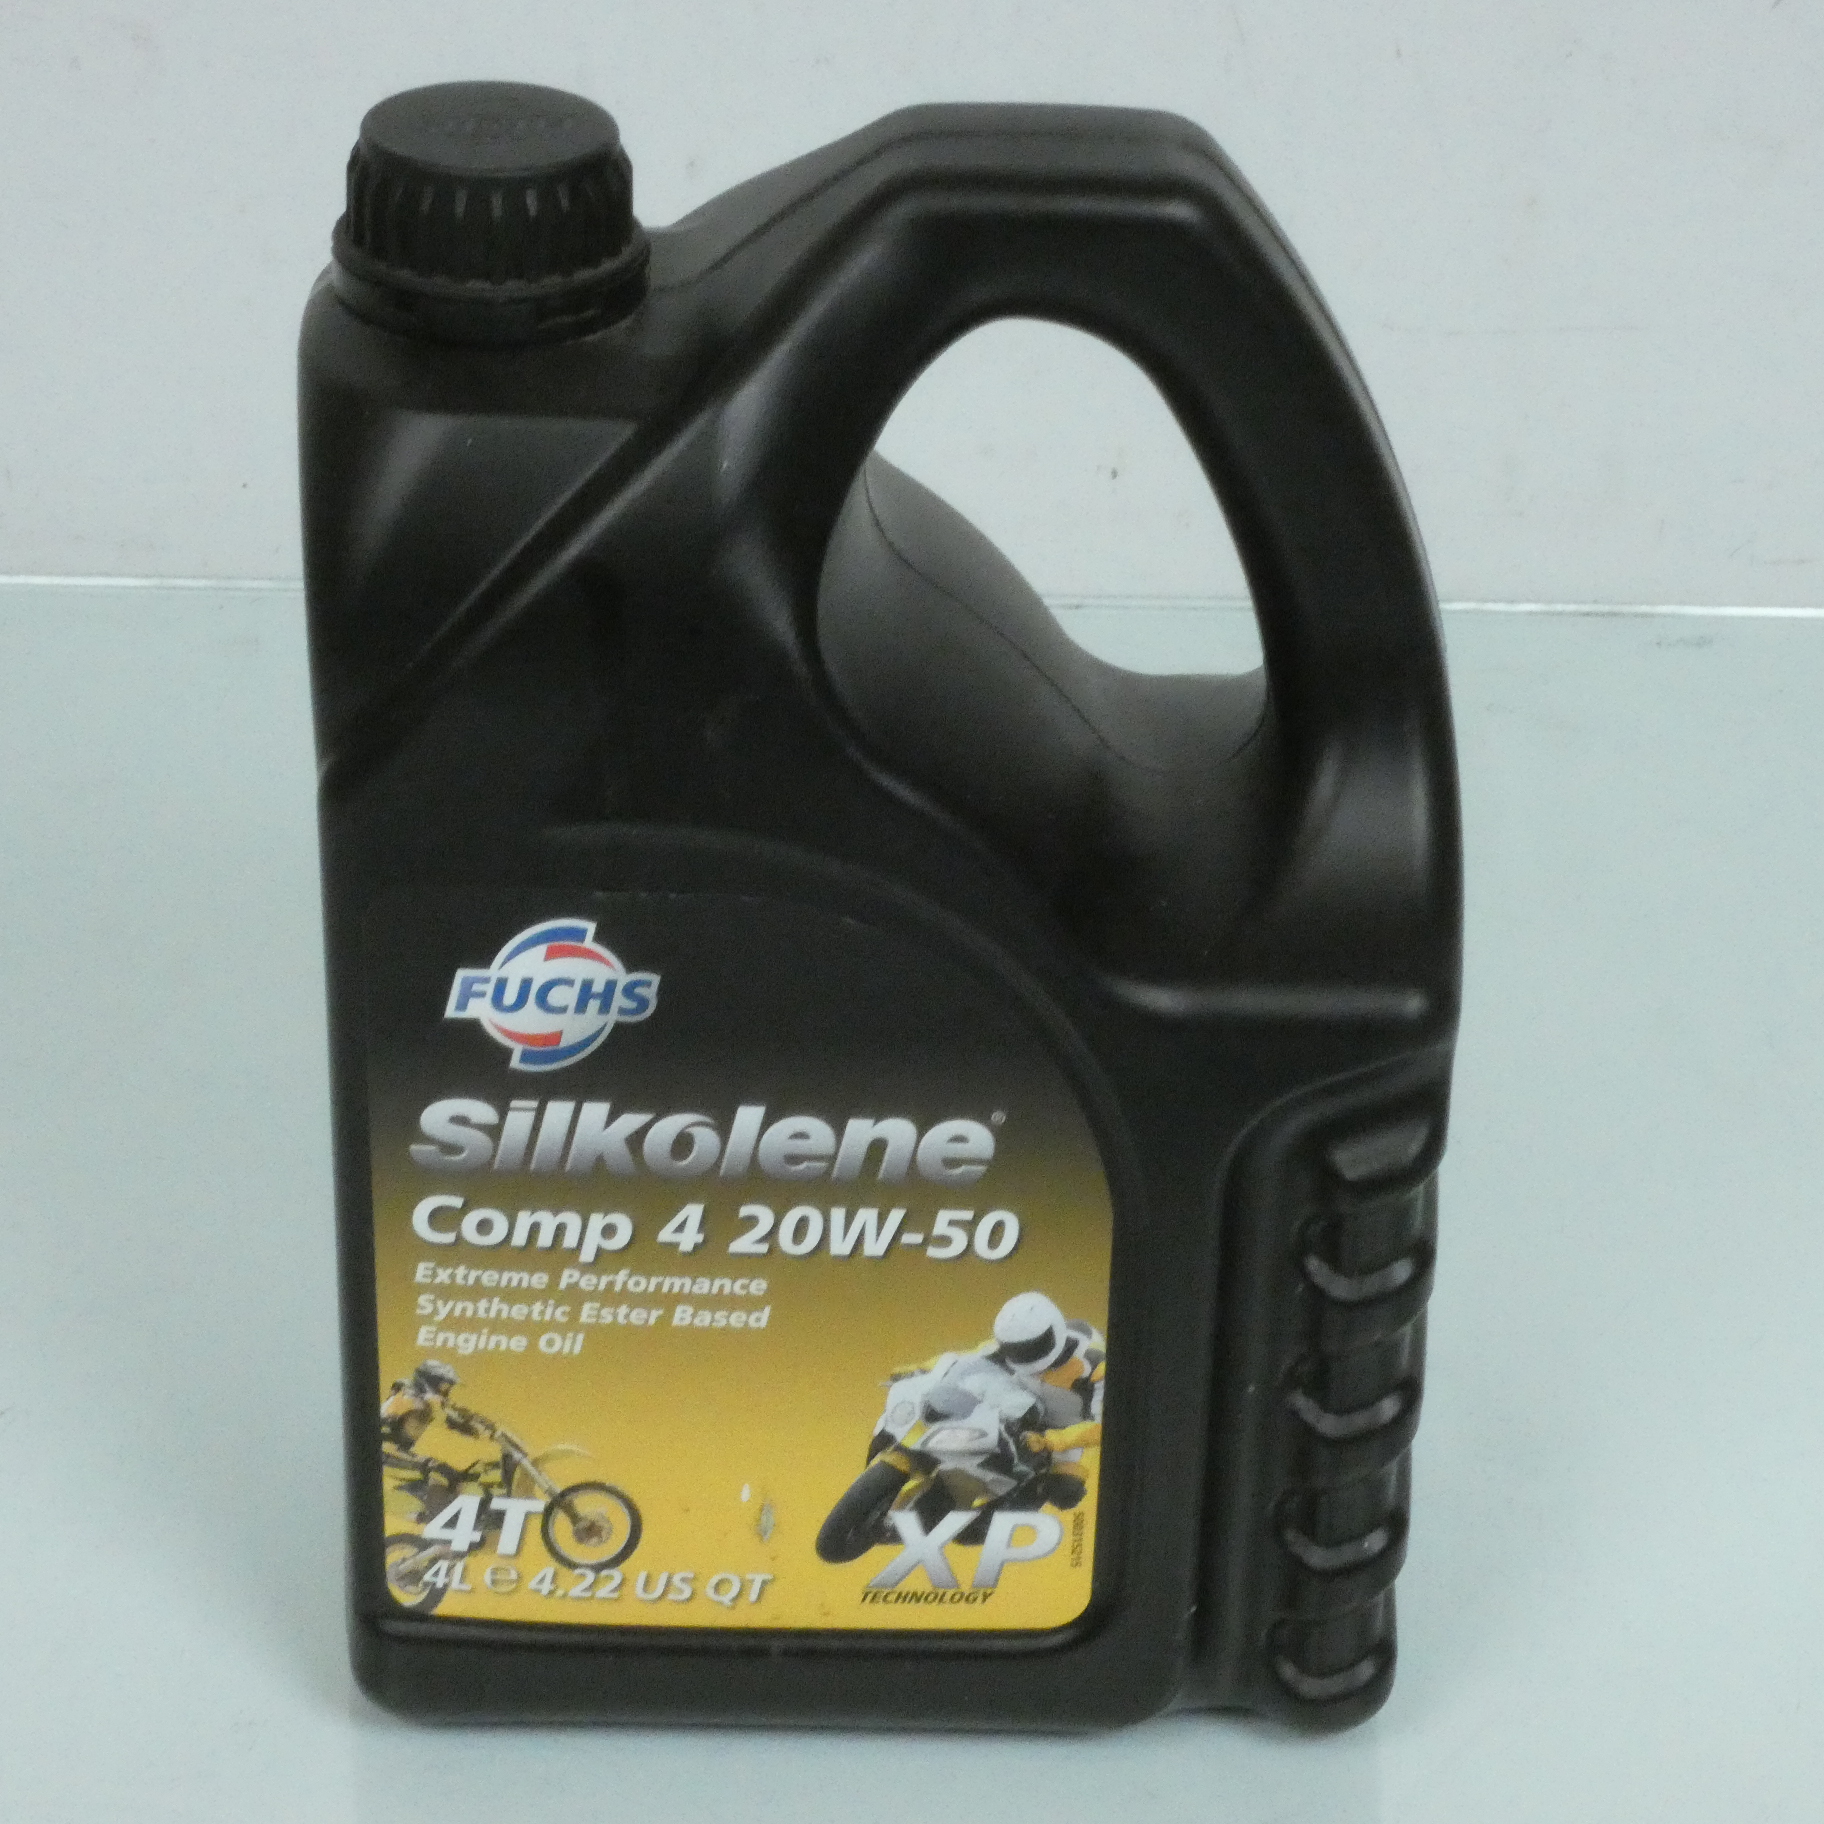 Bidon d'huile 4 temps Silkolene (Fuchs) Comp 4 20W-50 synthétique pour moto neuf